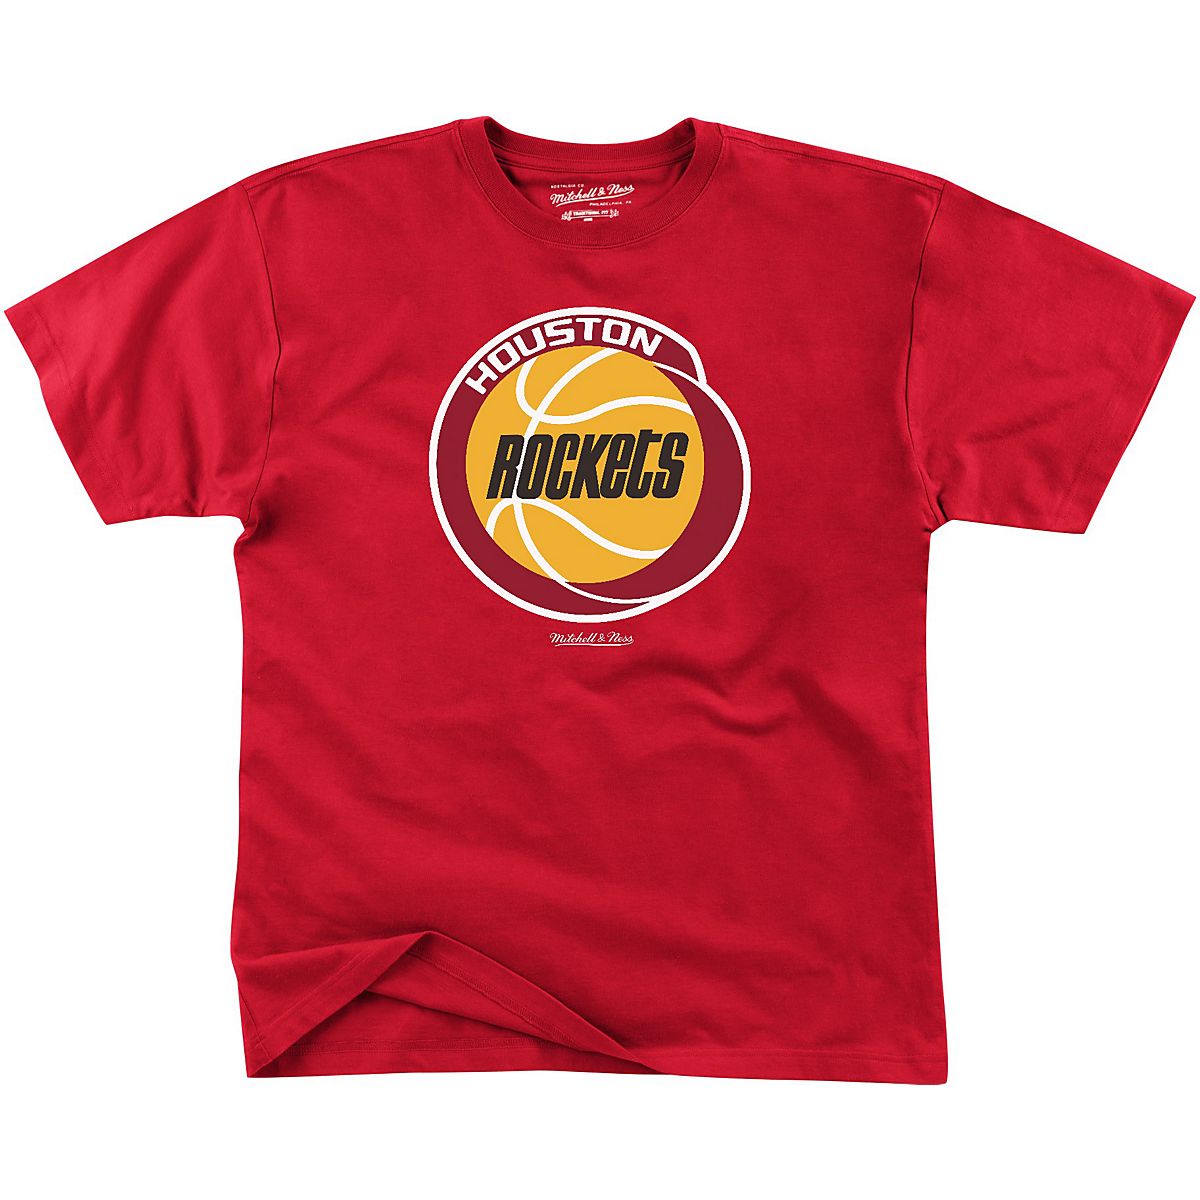 Buy Team Mascot Shirt Rockets Team Shirt Rockets School Tee Online